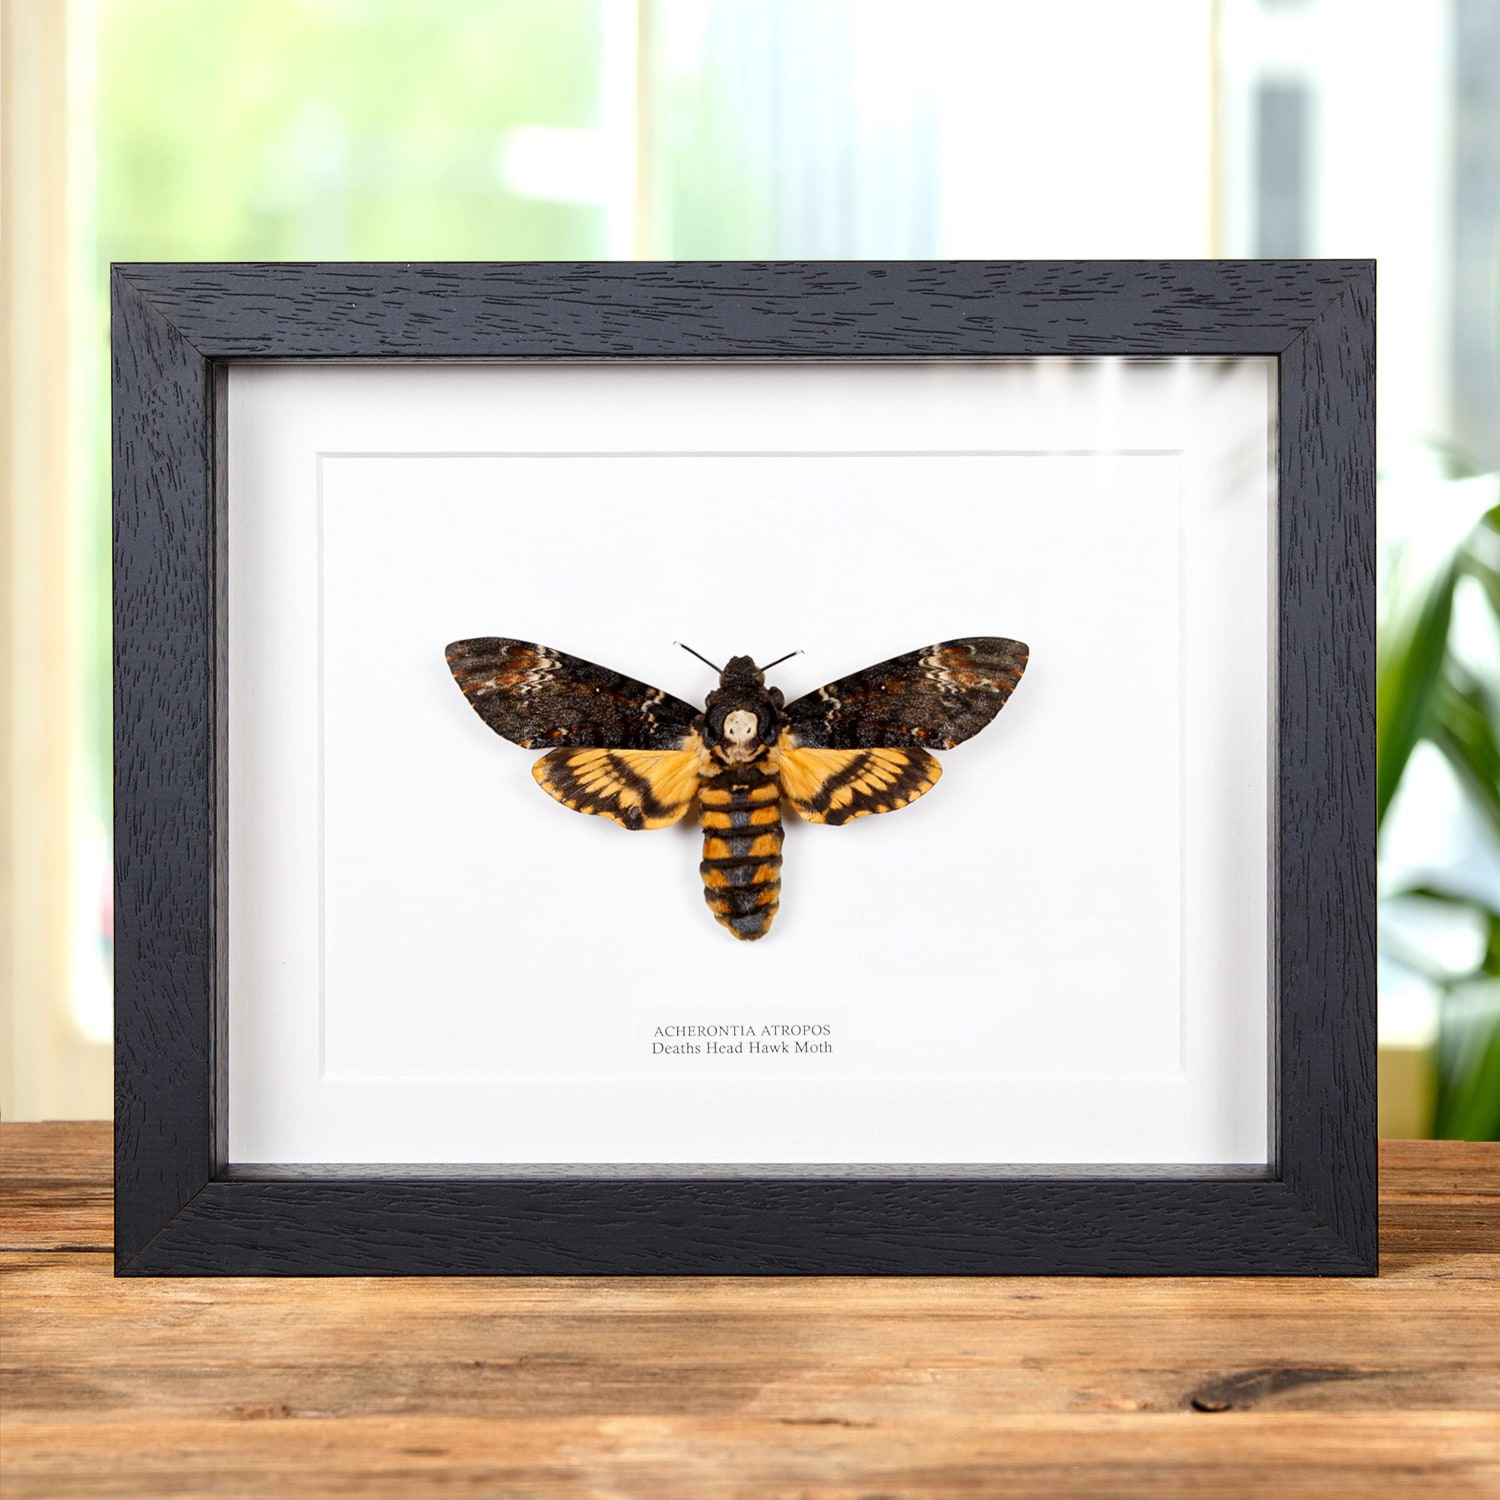 XL Deaths Head Hawk Moth in Box Frame (Acherontia atropos)